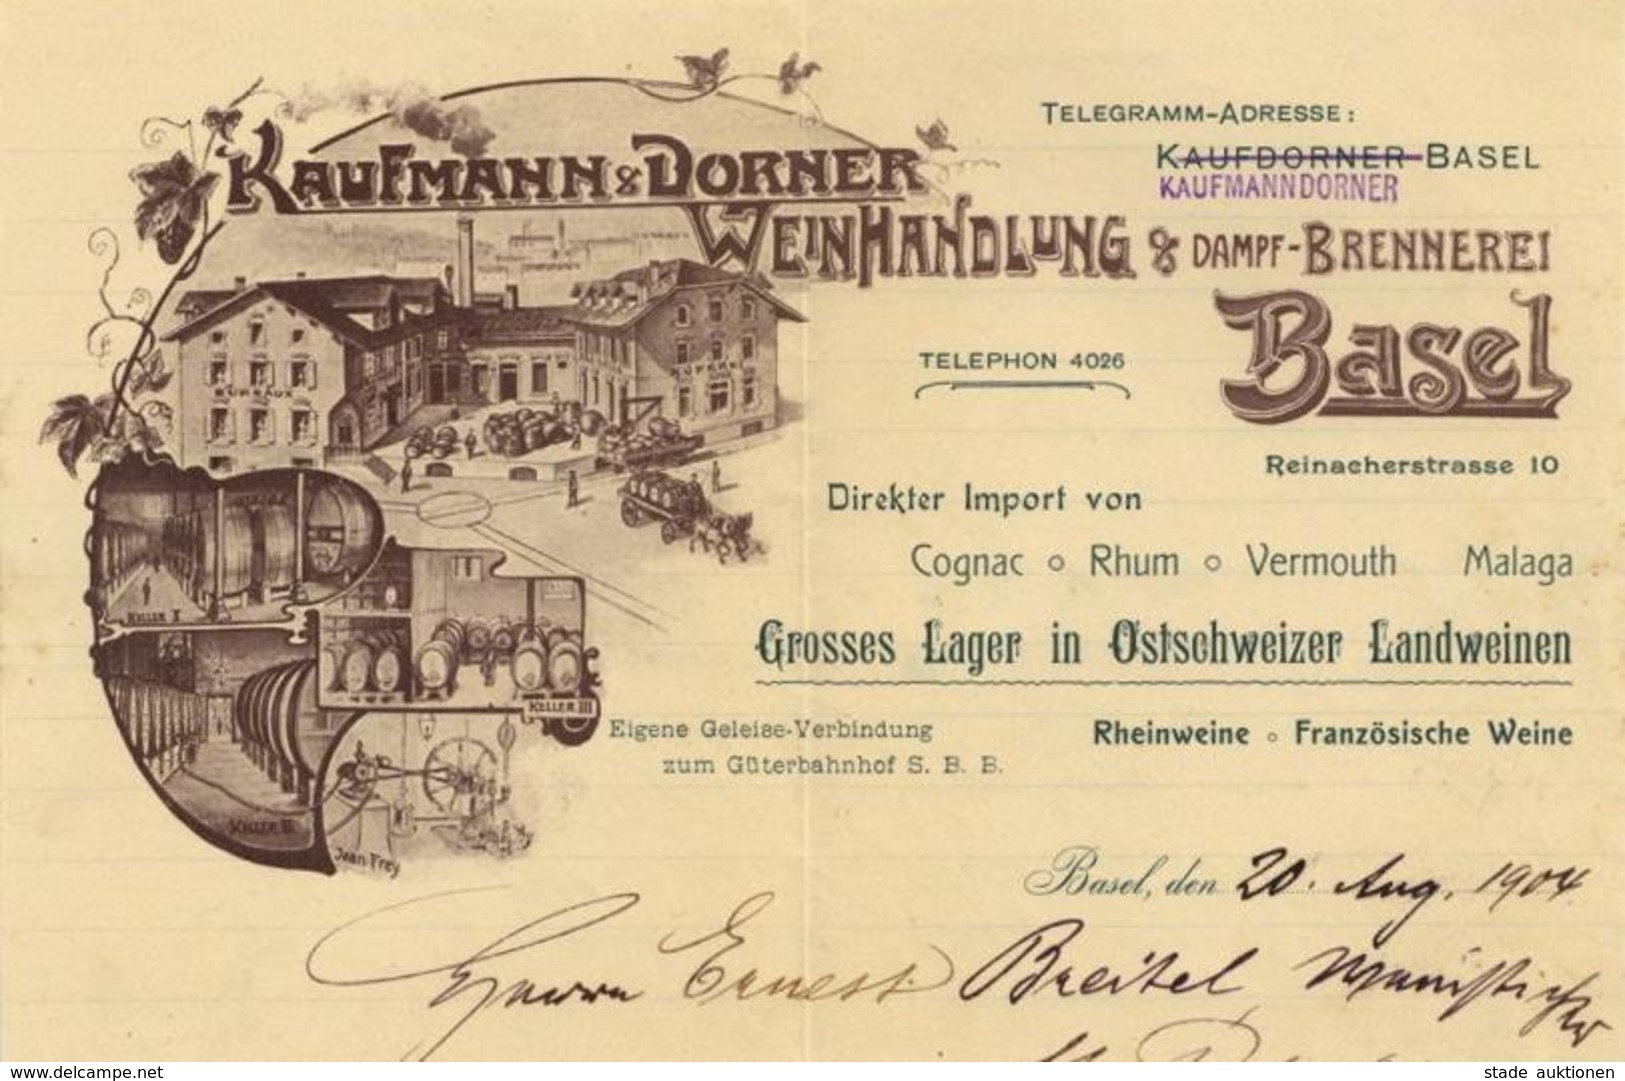 Wein Basel CH Schön Illustrierter Briefbogen Kaufmann & Dorner Weinhandlung 1904 I-II Vigne - Ausstellungen